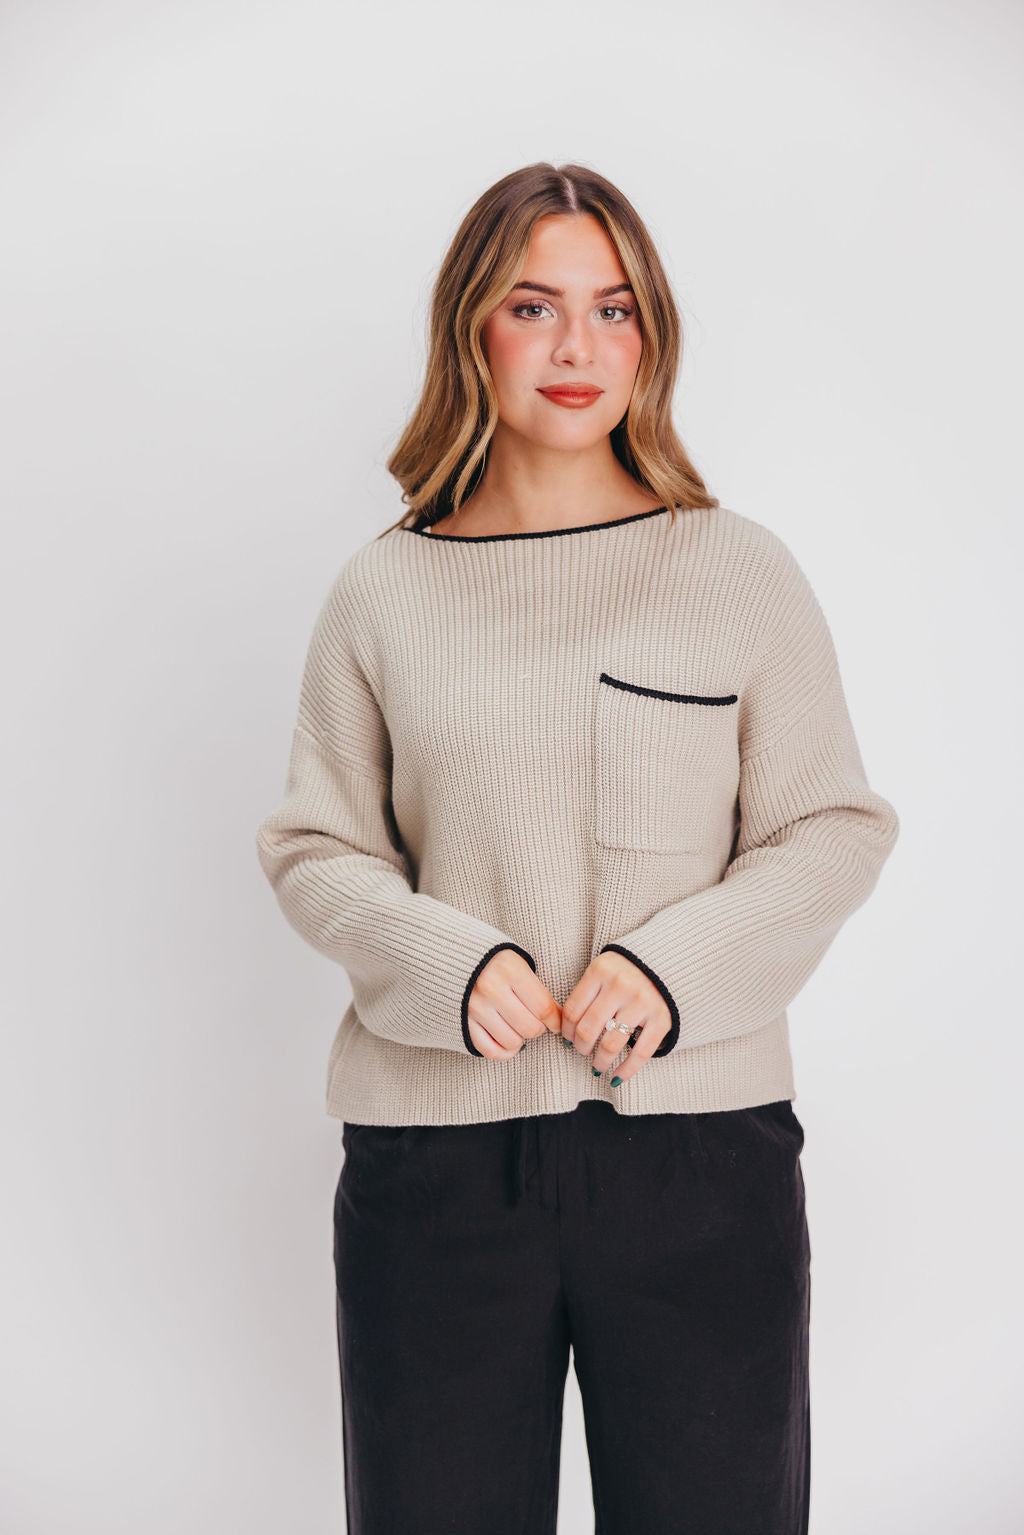 The Juliet Sweater in Ecru